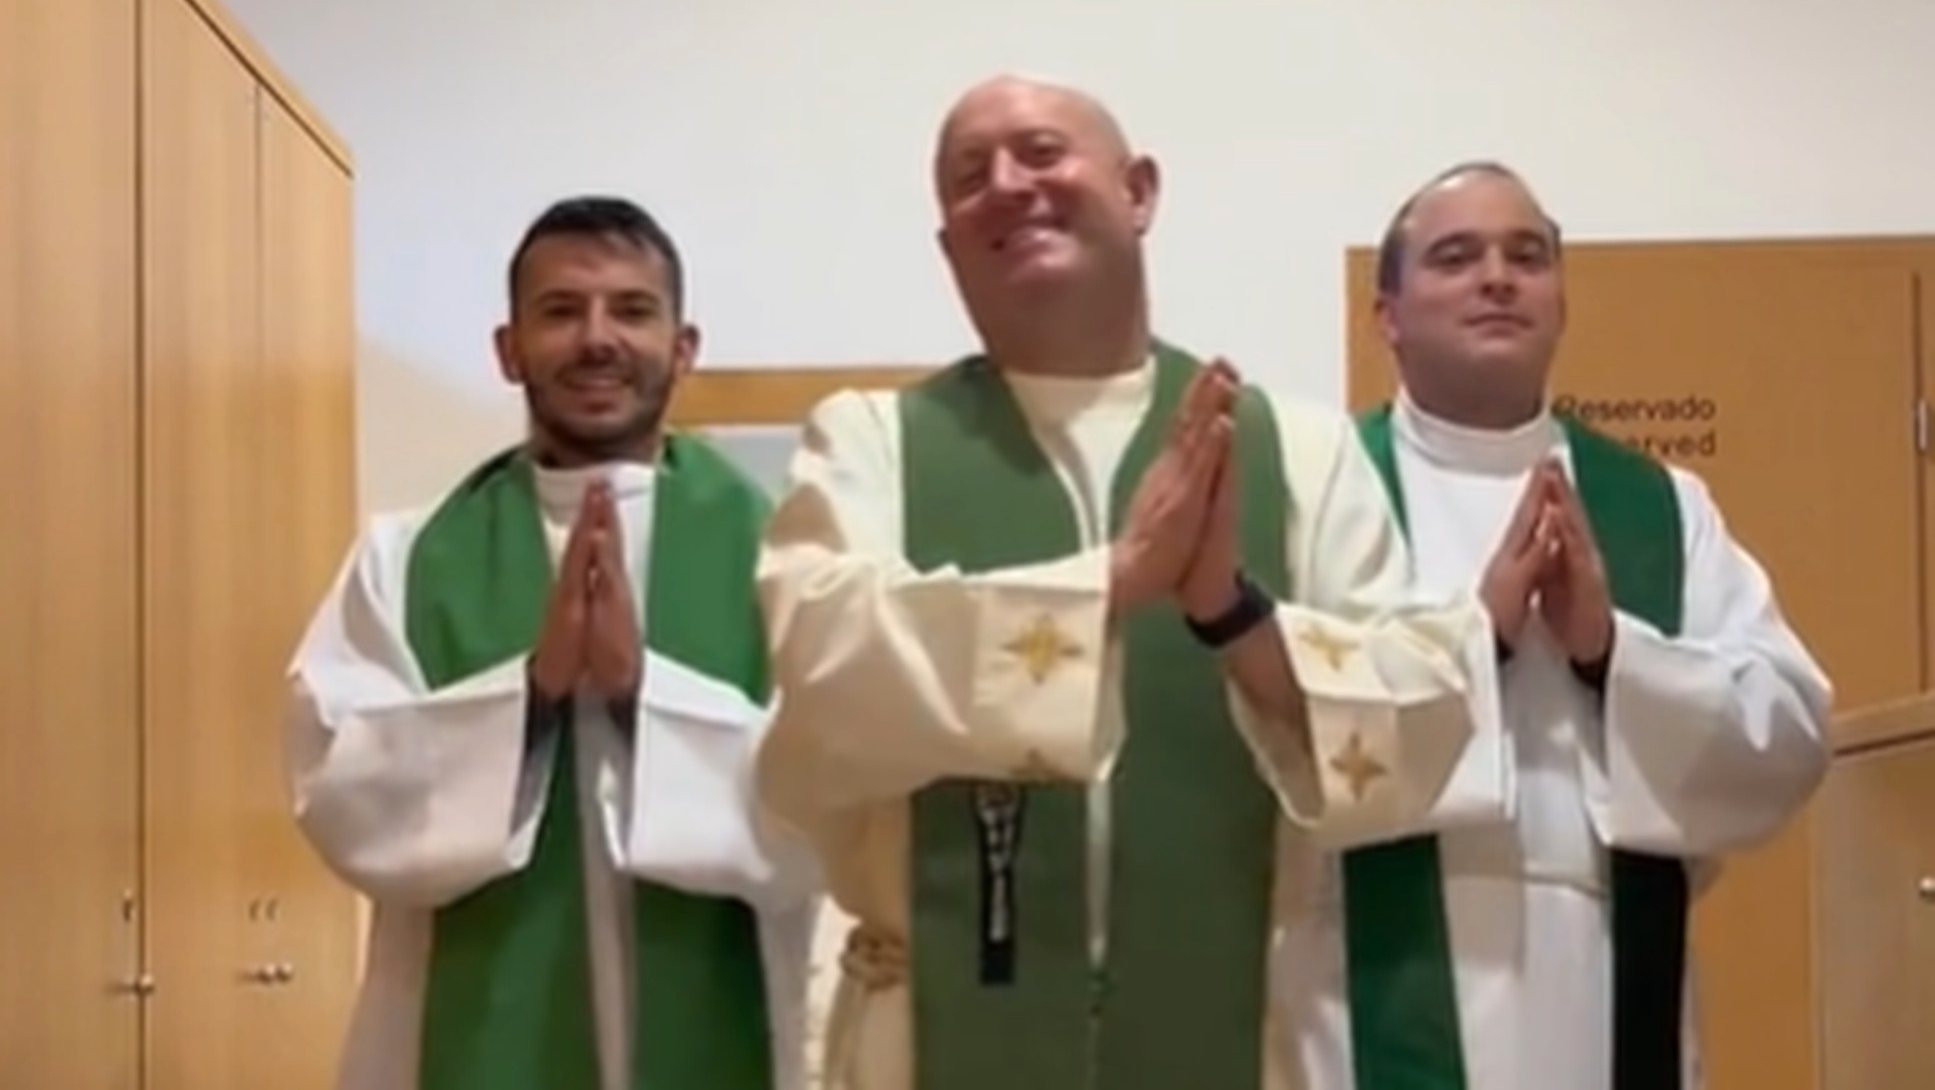 Nos vídeos, os três sacerdotes surgem vestidos com os acessórios litúrgicos e a dançar na sacristia